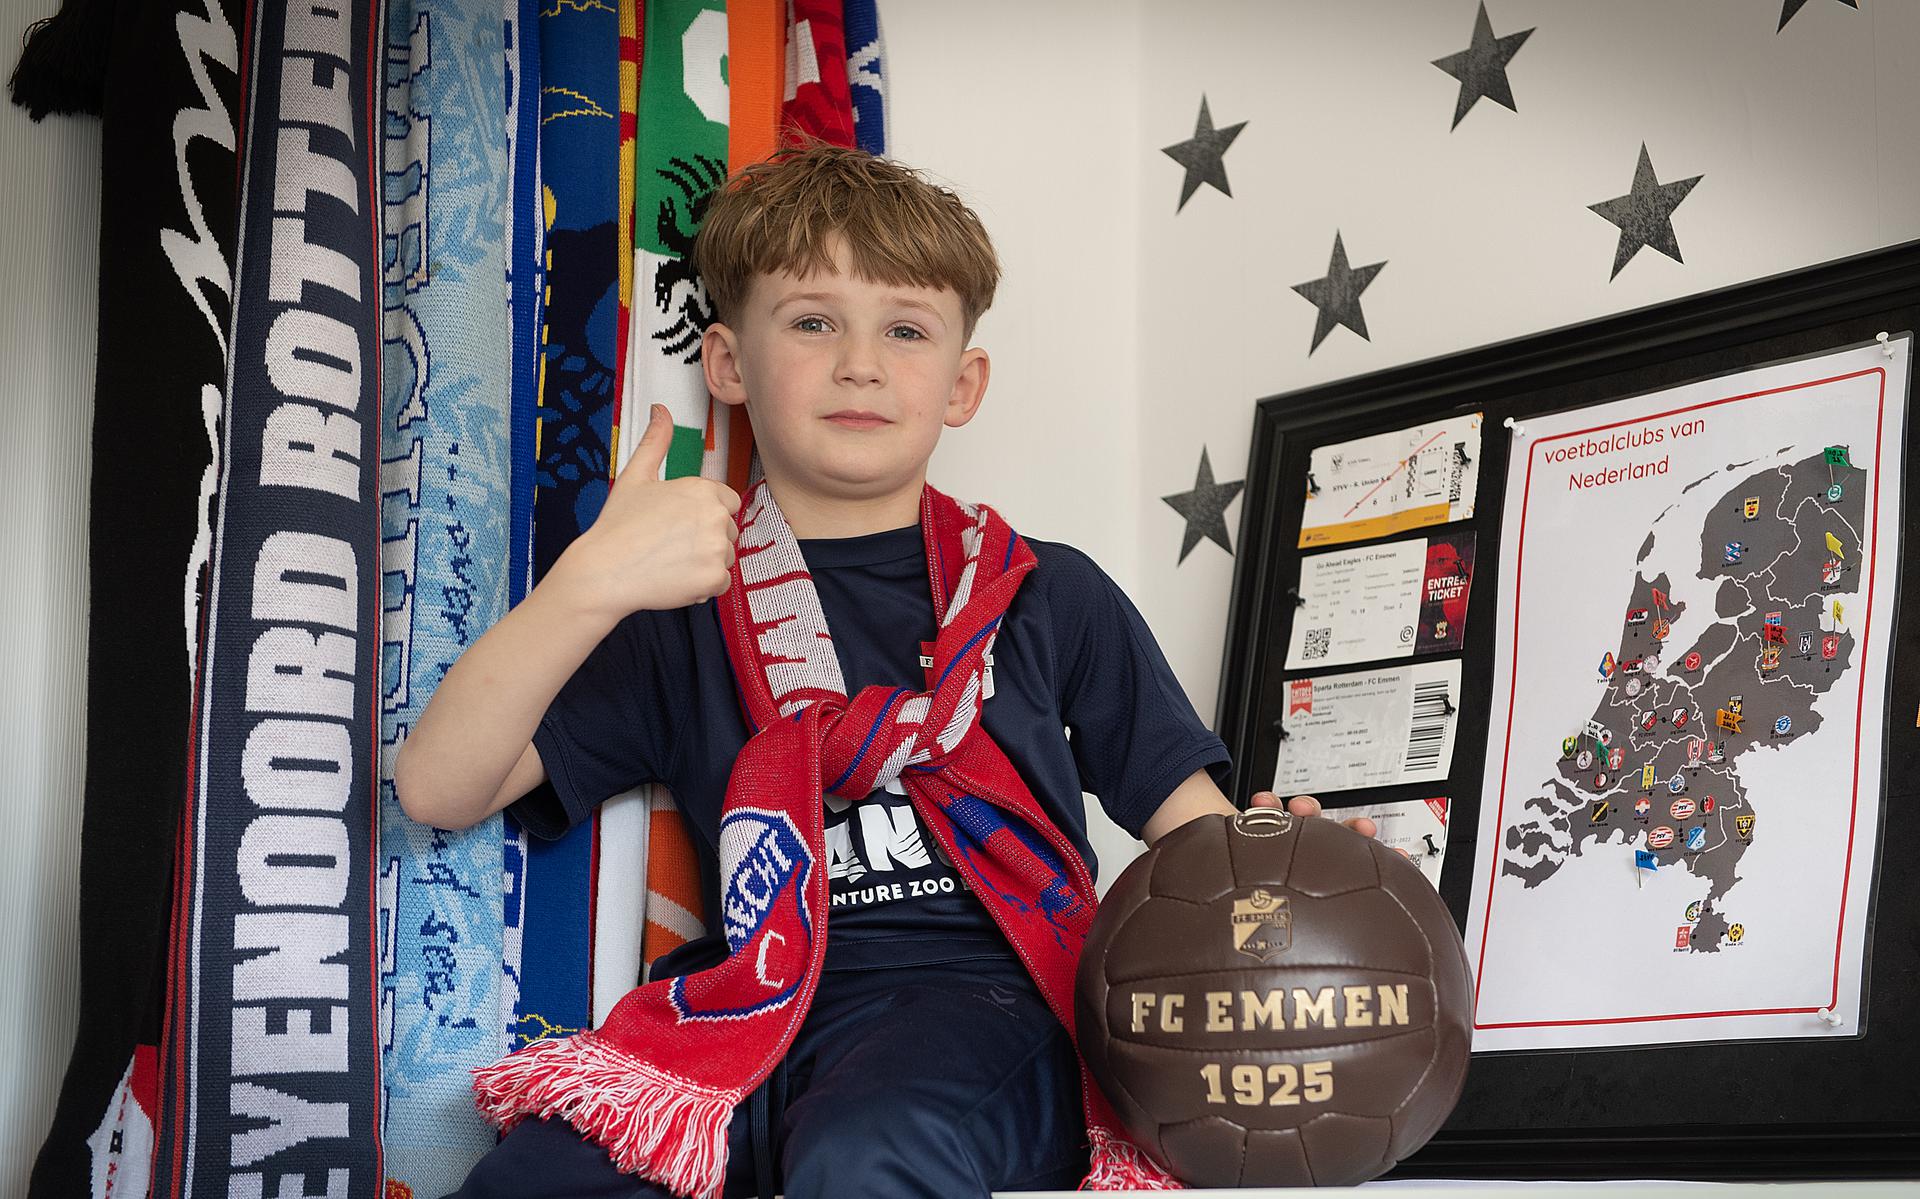 Max bij zijn voetbalkaart met een bijzonder sjaal van de overleden voetballer David di Tommaso van FC Utrecht.